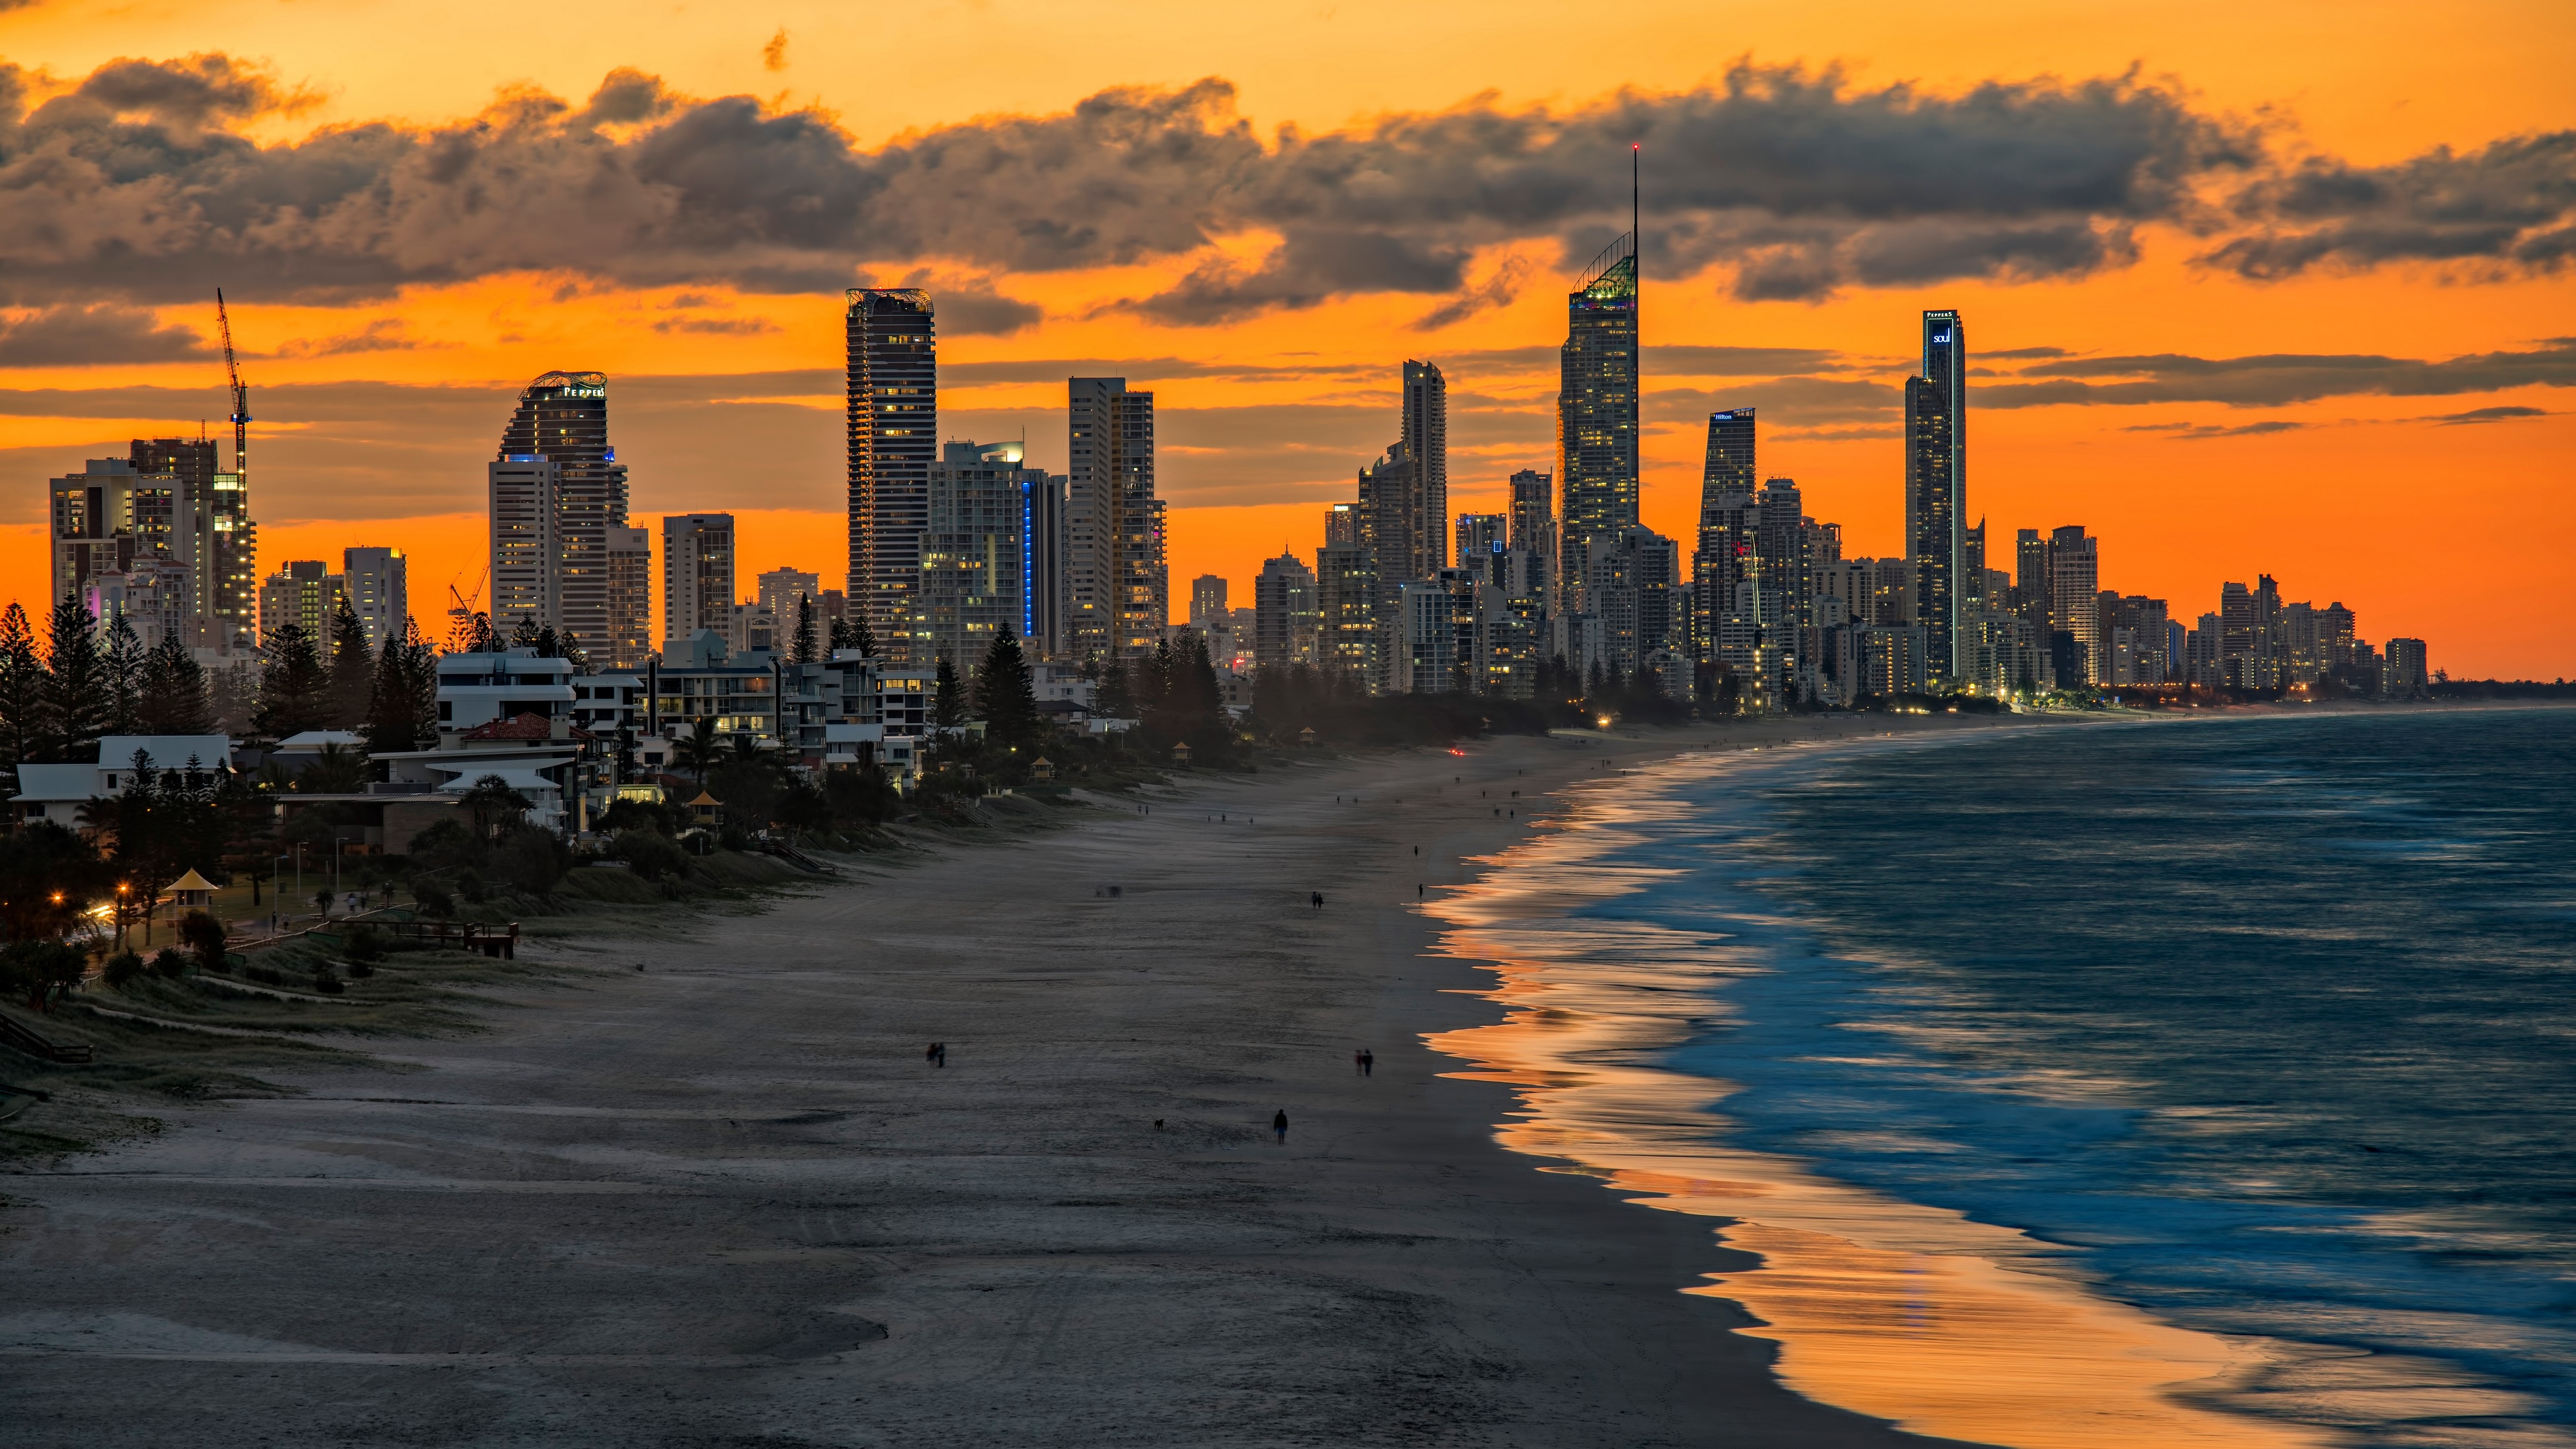 Evening shore in Australia